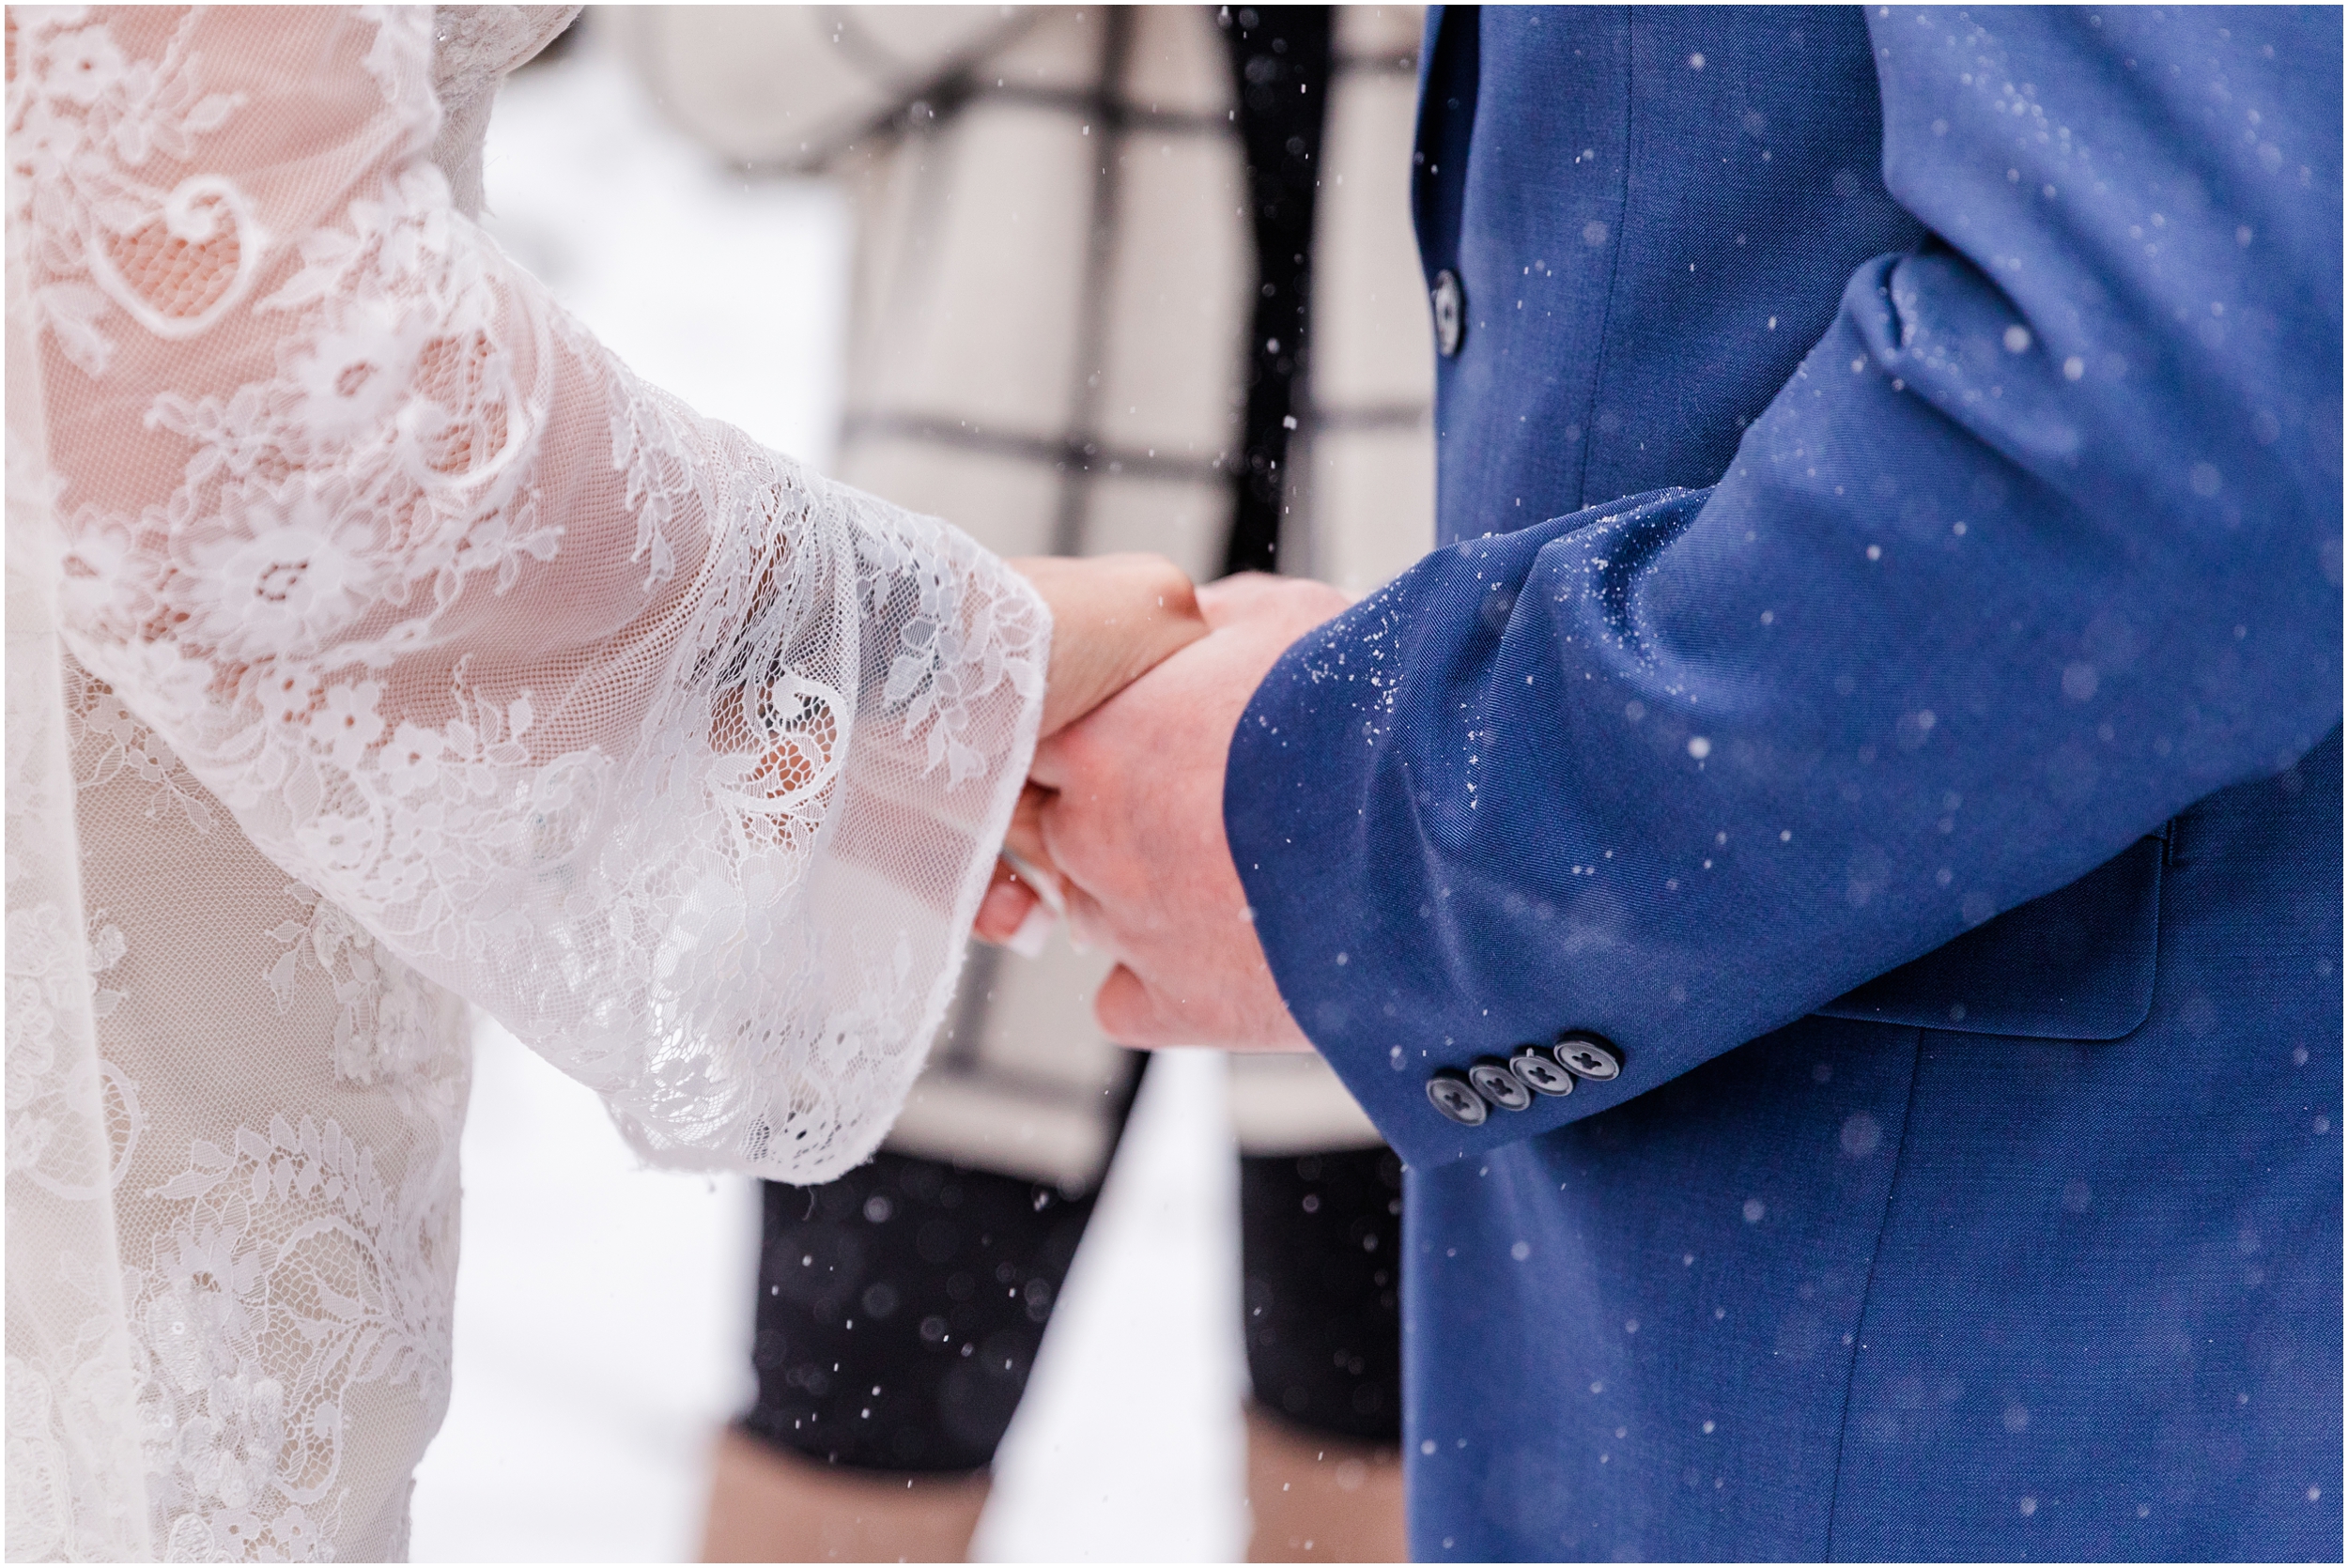 Colorado Winter Wedding